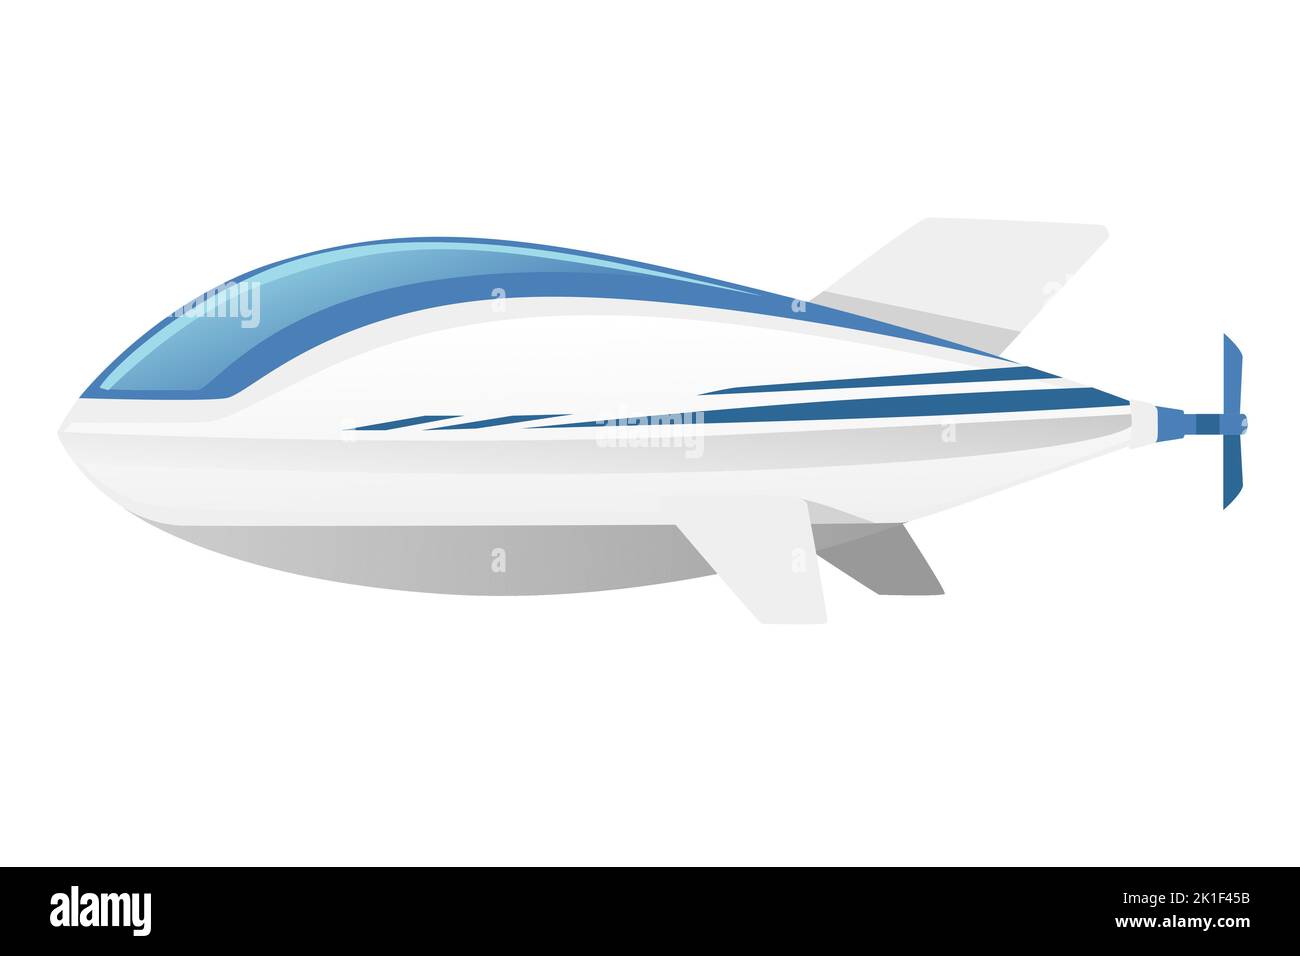 Kommerzielle Luftschiff weiße Farbe starre Luftschiff Vektor-Illustration isoliert auf weißem Hintergrund Stock Vektor